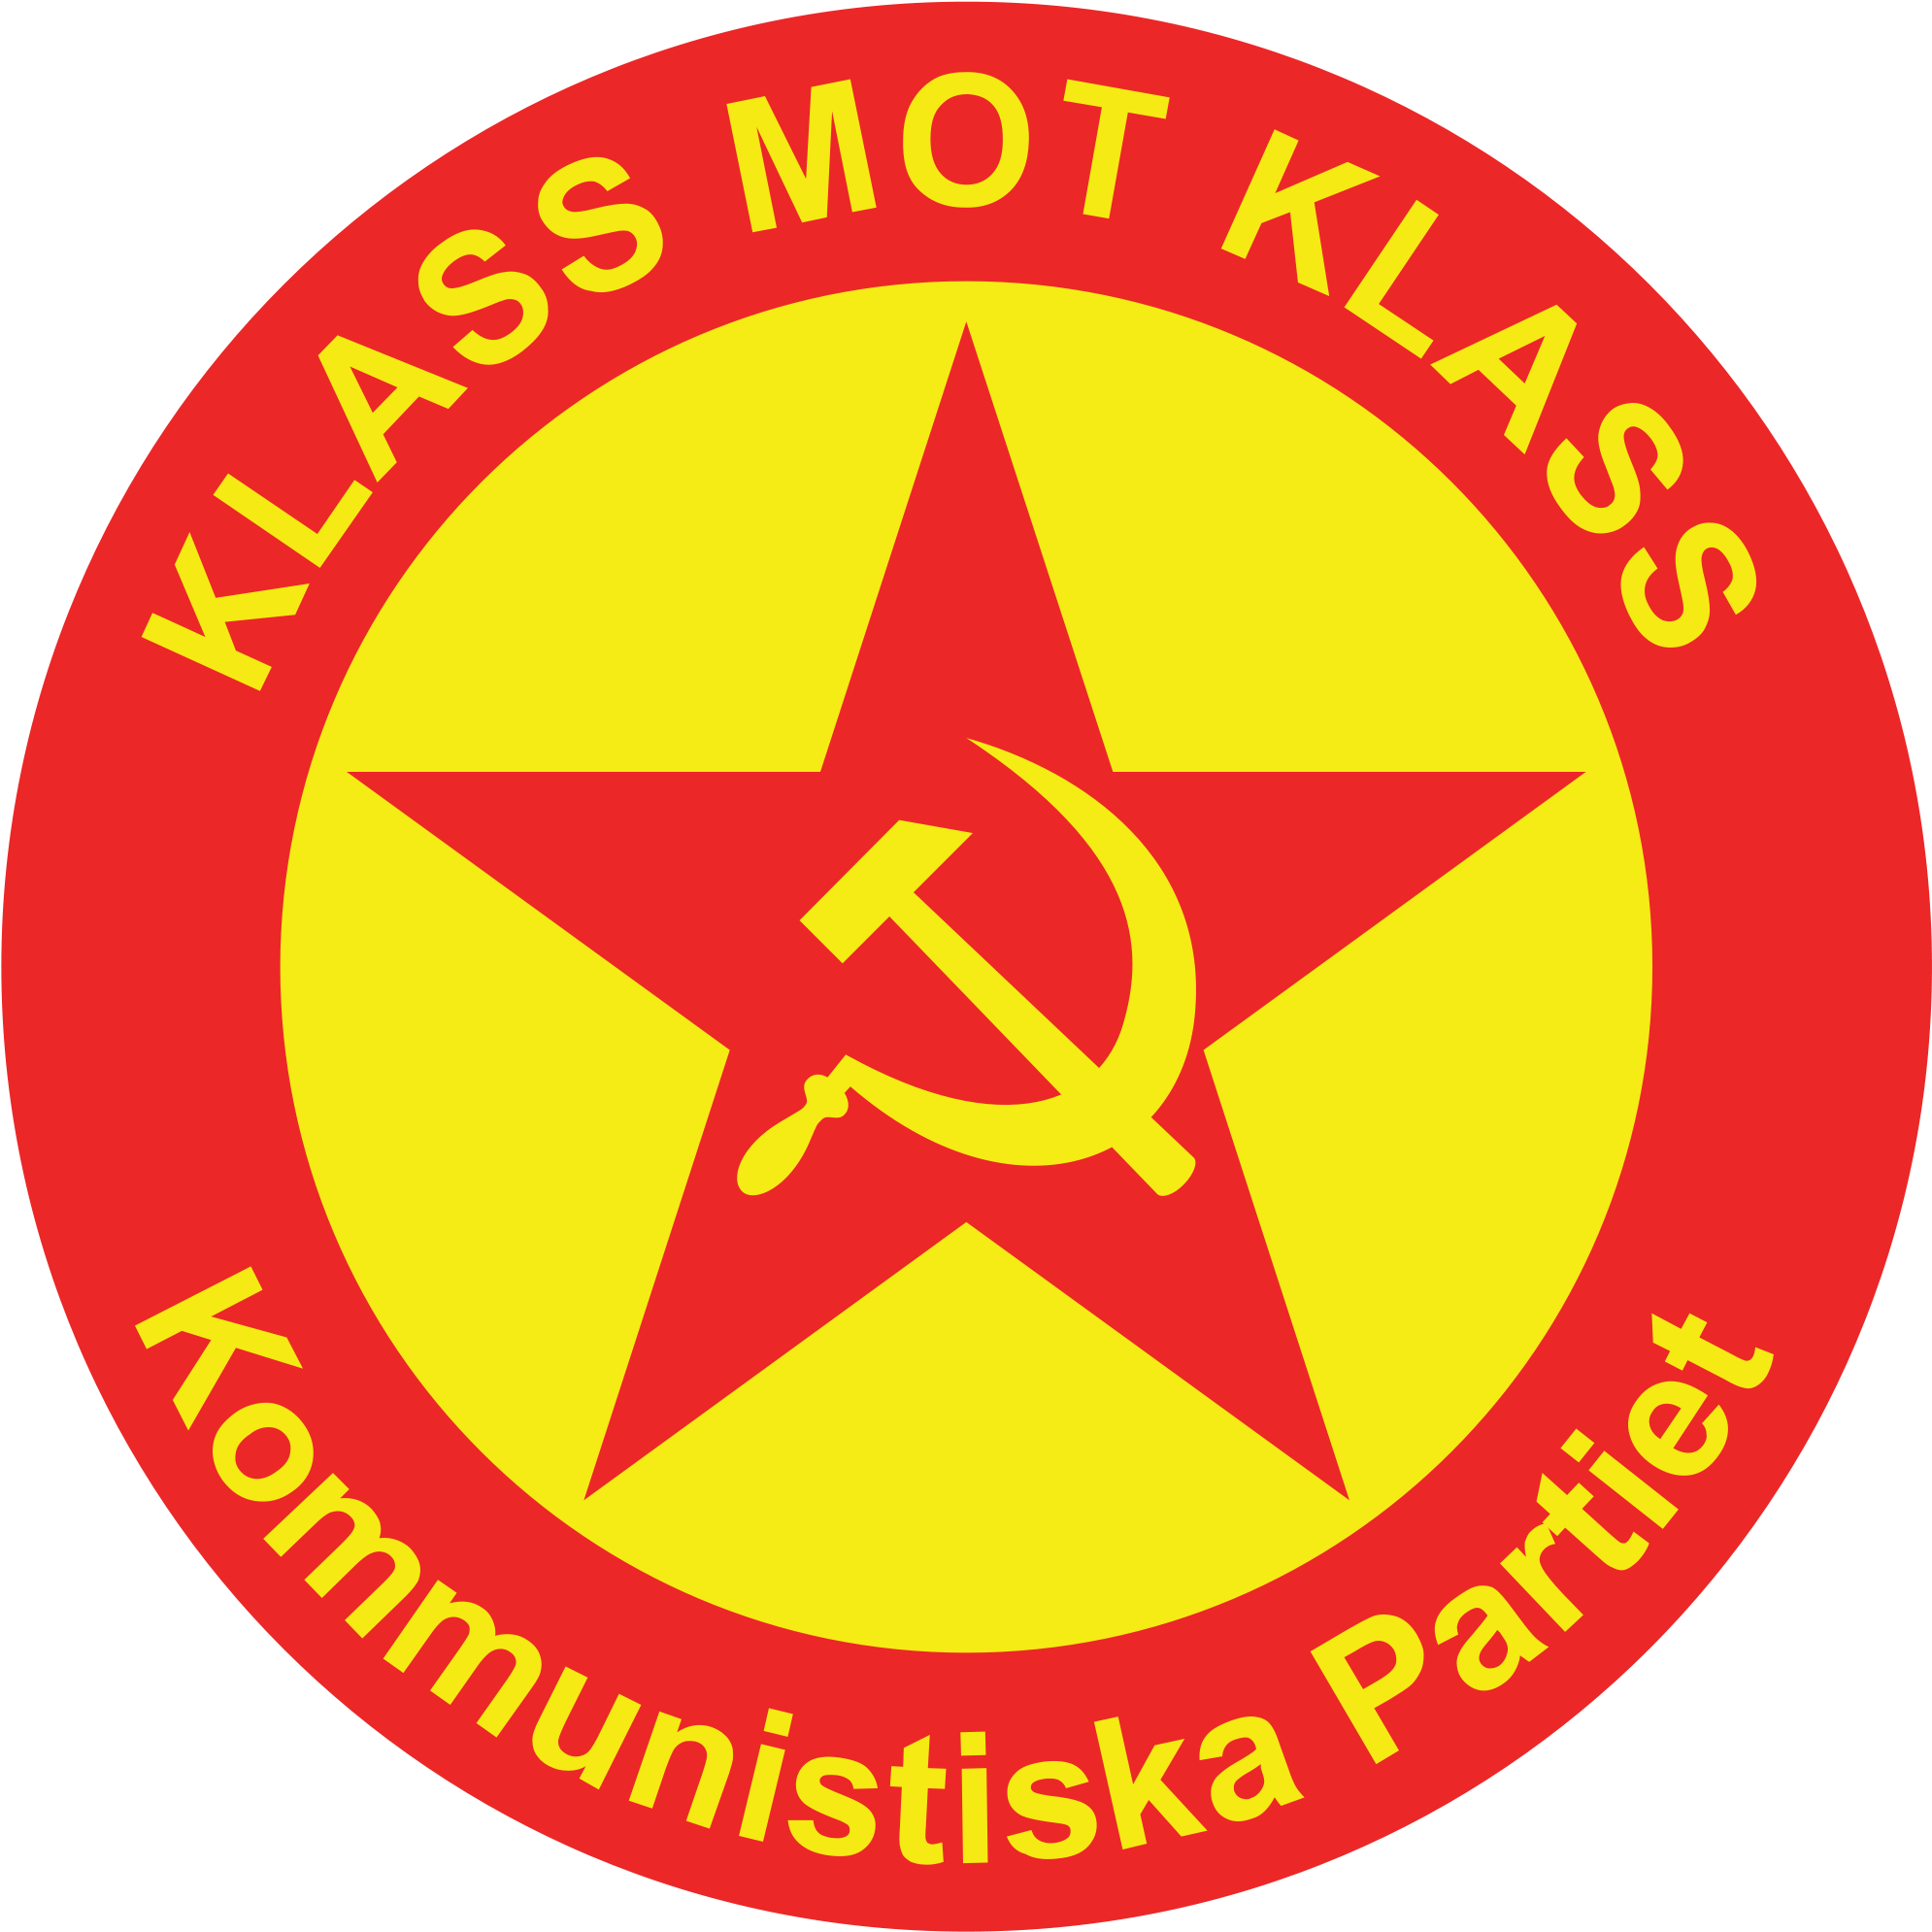 Open - Communist Party Of Sweden (2000x2000)